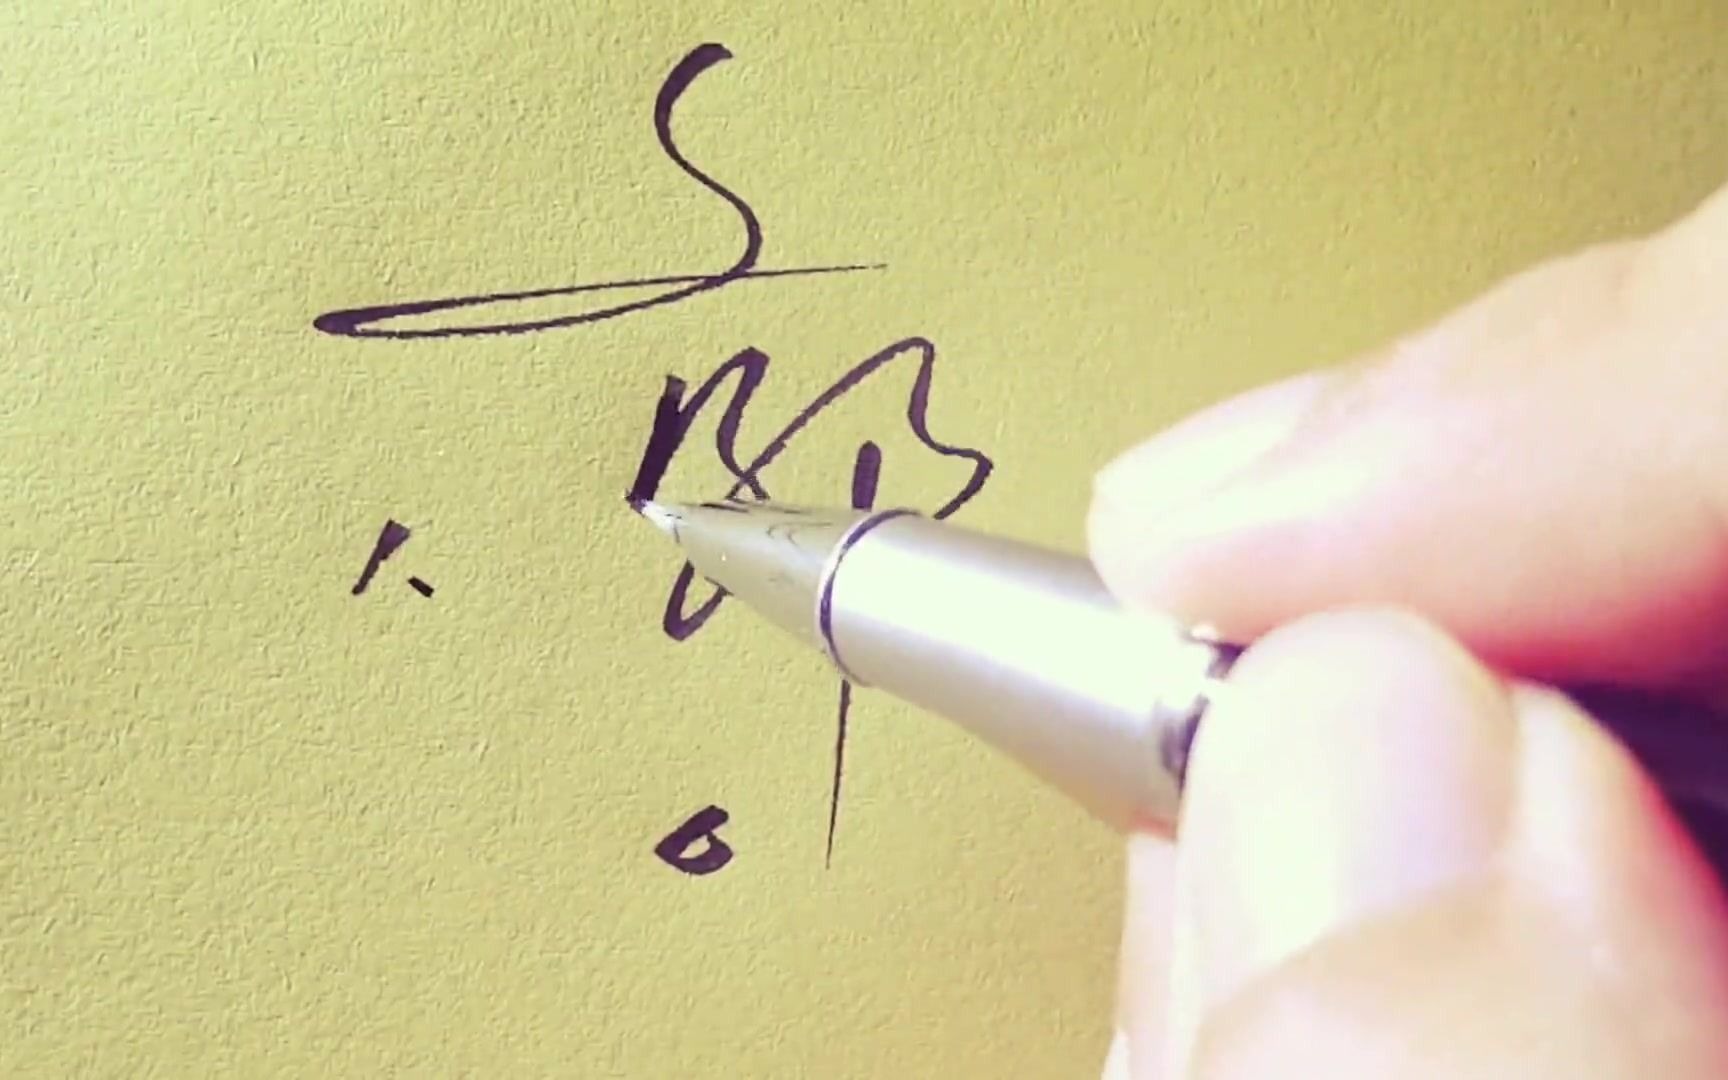 郭字签名设计的写法要领讲解,第6种写法简直让签名飞起来!